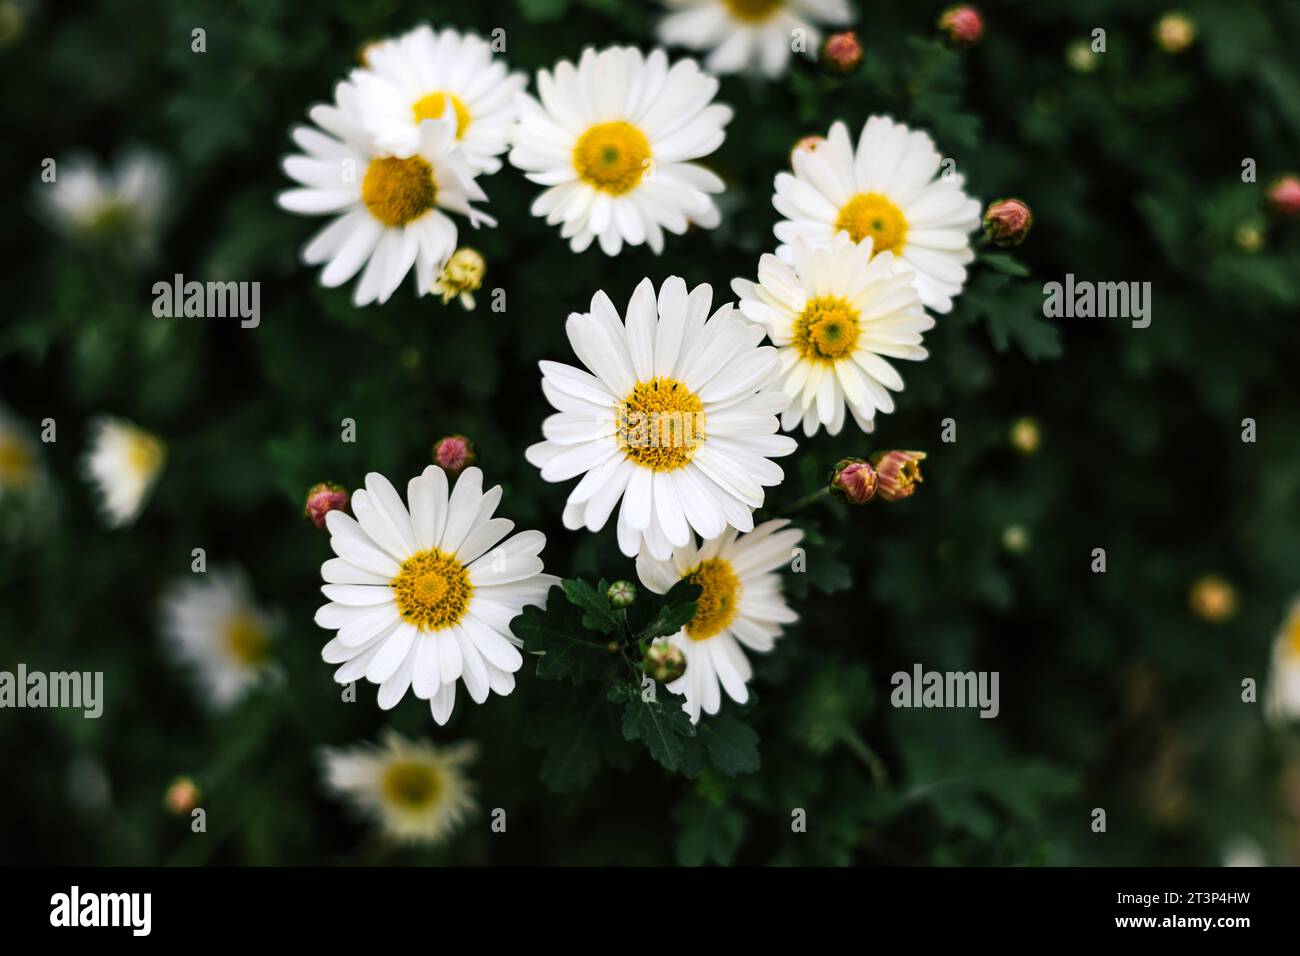 Matricaria chamomilla jährliche blühende Pflanze der Familie der Asteraceae. Gänseblümchenstrauch mit weißen Blütenblättern, gelben Blütenständen und grünen Stängeln. Sommerflor Stockfoto